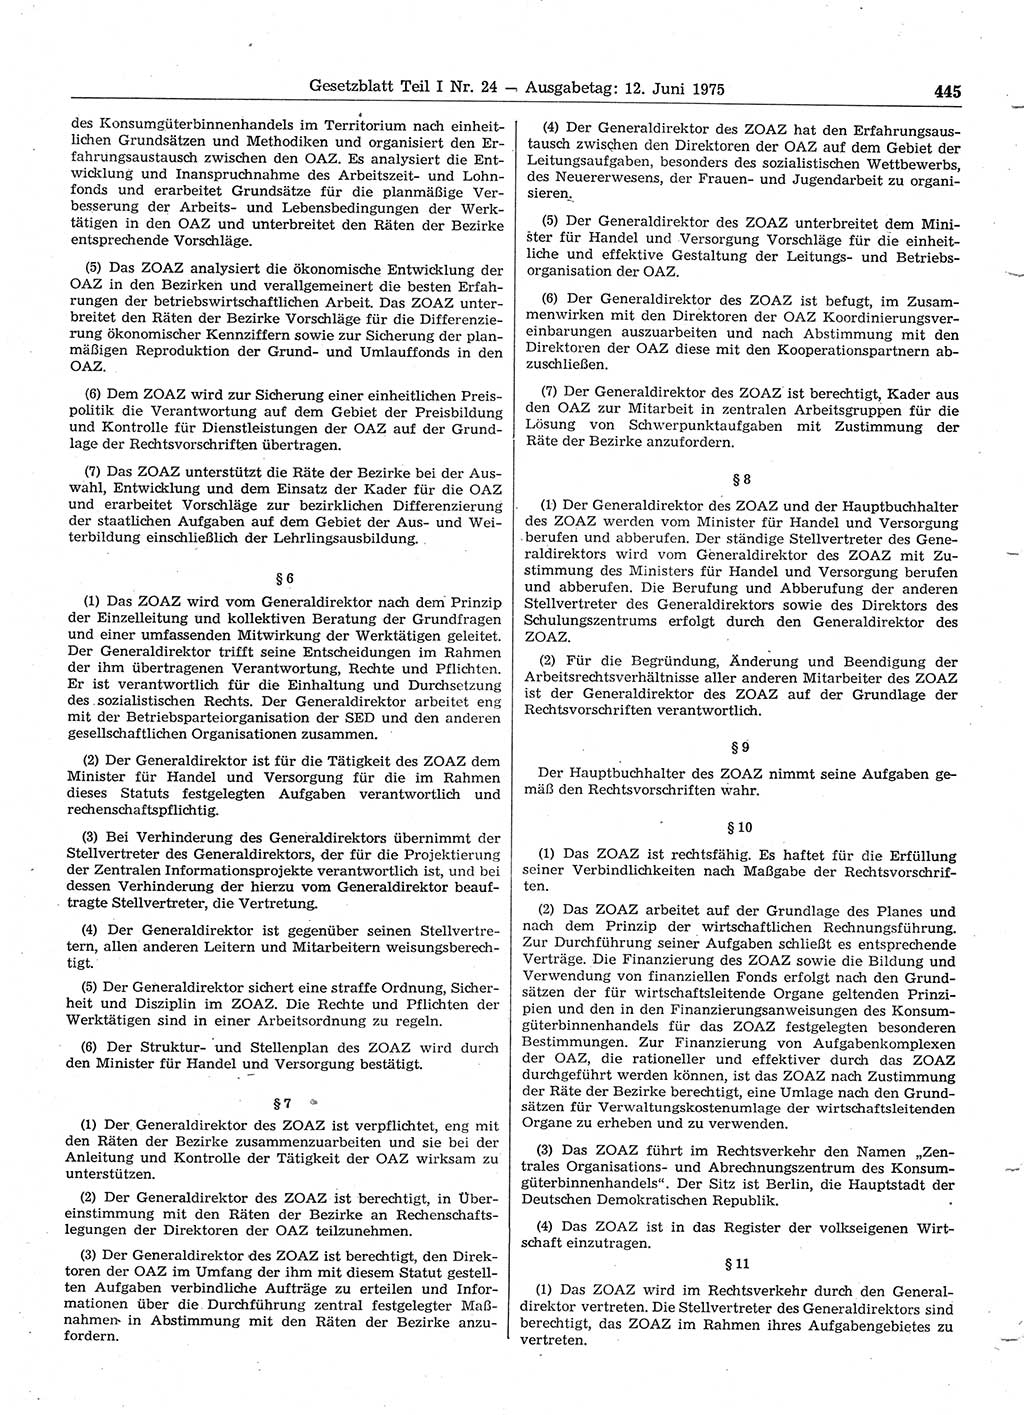 Gesetzblatt (GBl.) der Deutschen Demokratischen Republik (DDR) Teil Ⅰ 1975, Seite 445 (GBl. DDR Ⅰ 1975, S. 445)